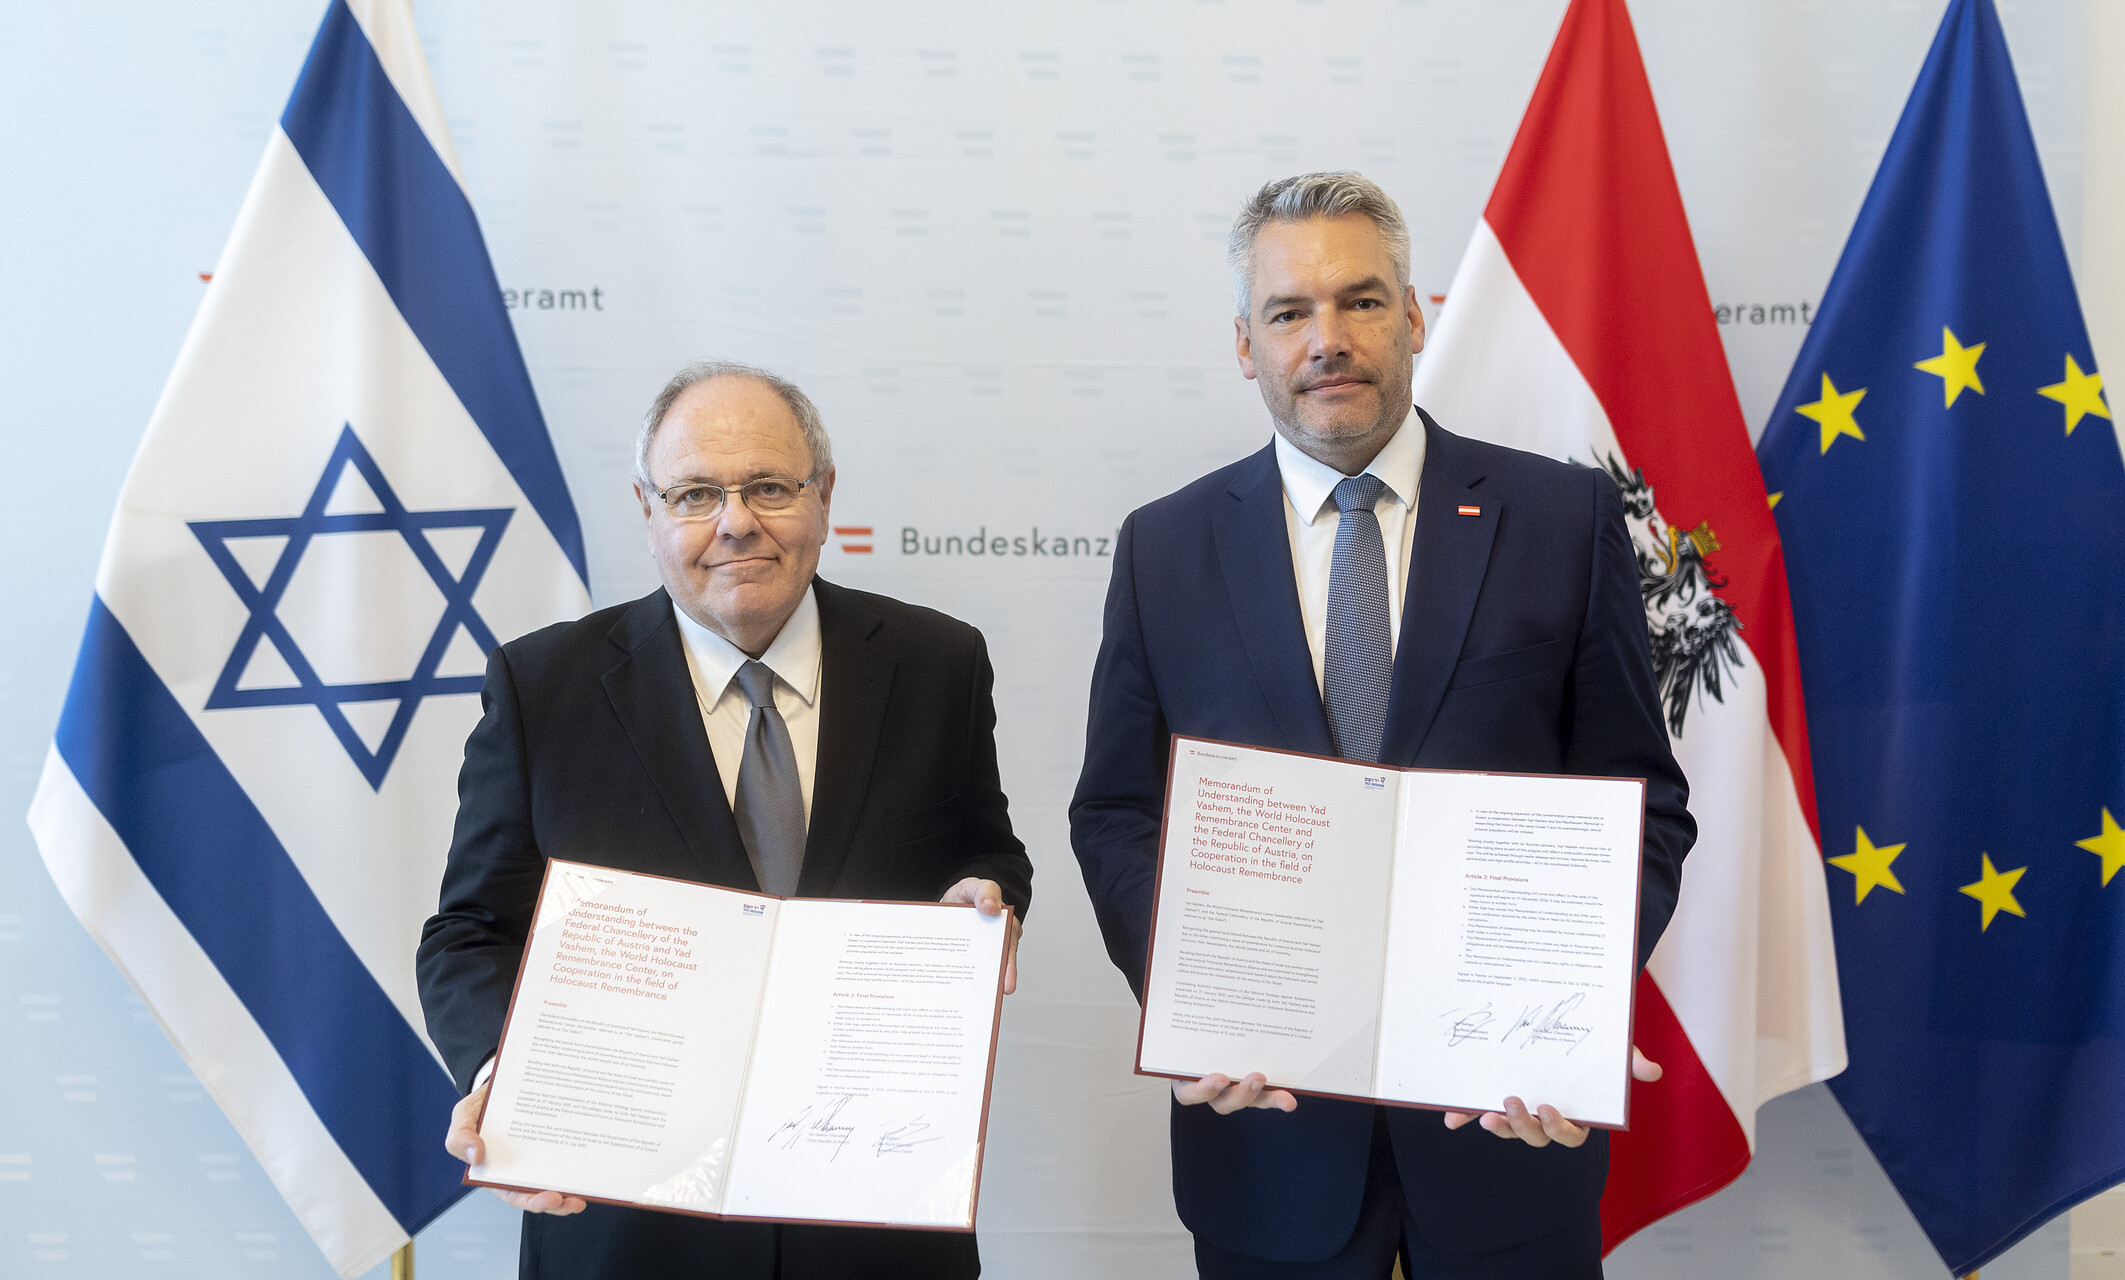 Dani Dayan und Karl Nehammer unterzeichneten in Wien eine neue Absichtserklärung zwischen Yad Vashem und dem österreichischen Bundeskanzleramt